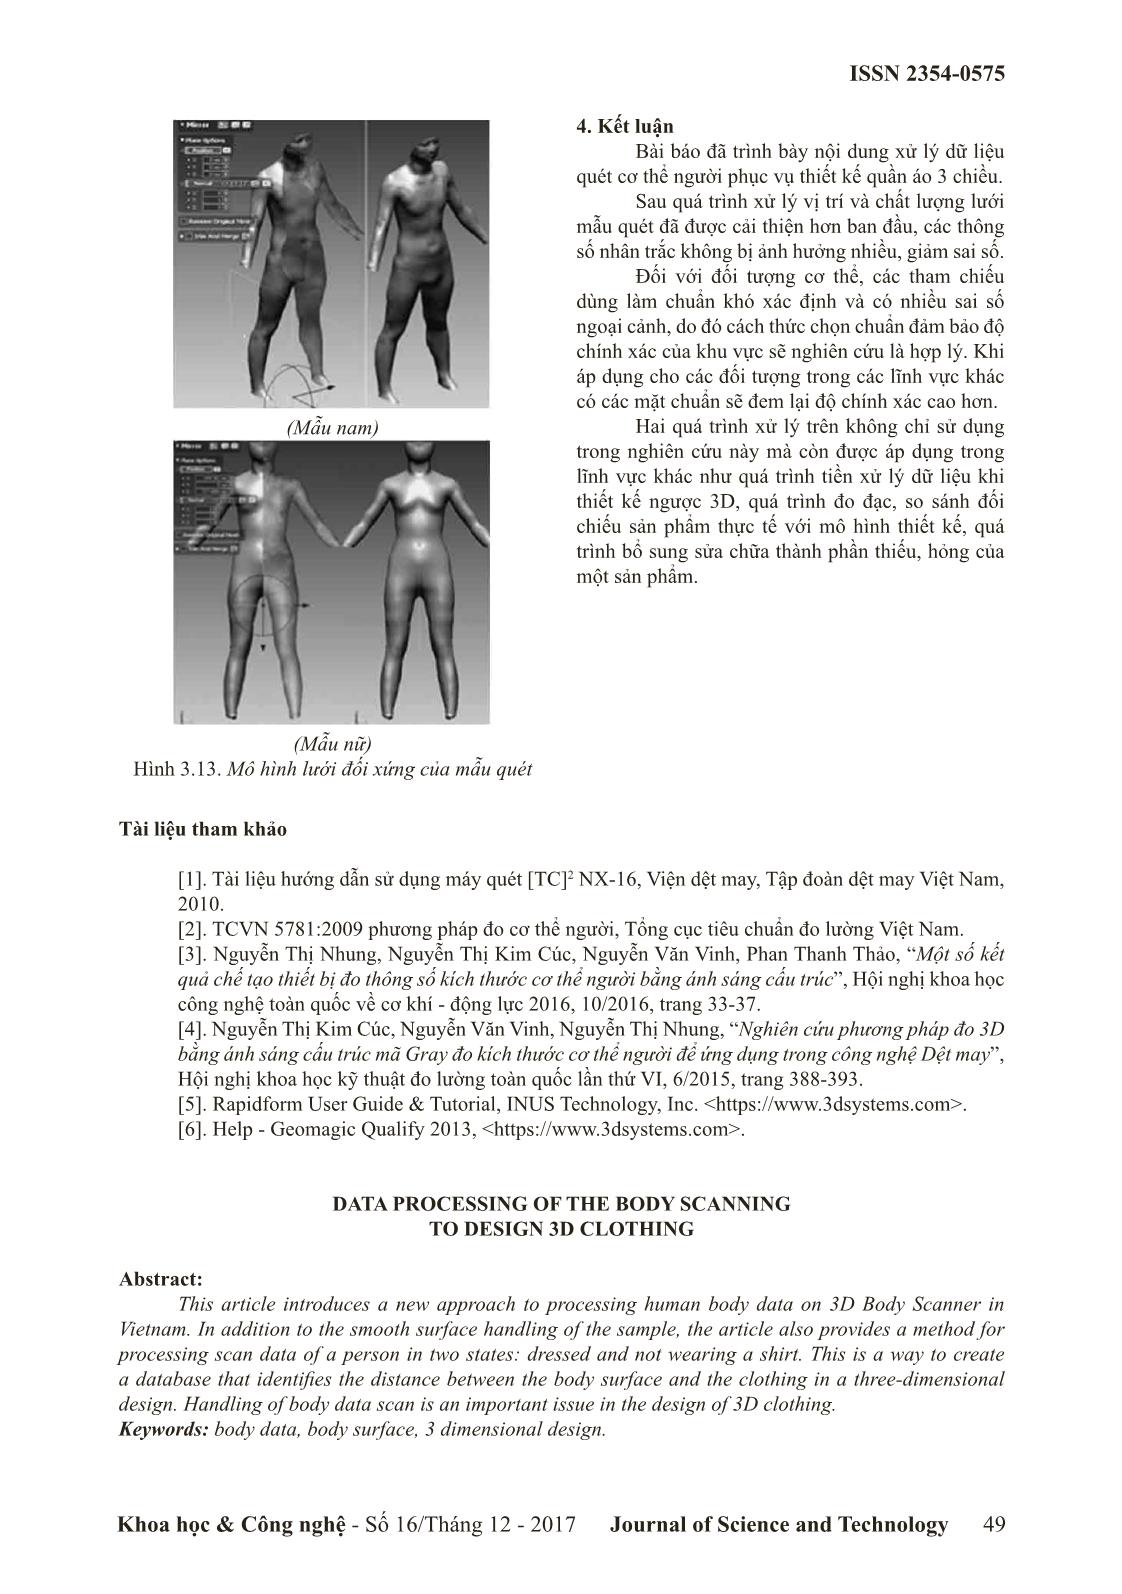 Xử lý dữ liệu quét mẫu cơ thể người phục vụ thiết kế quân áo 3 chiều trang 7